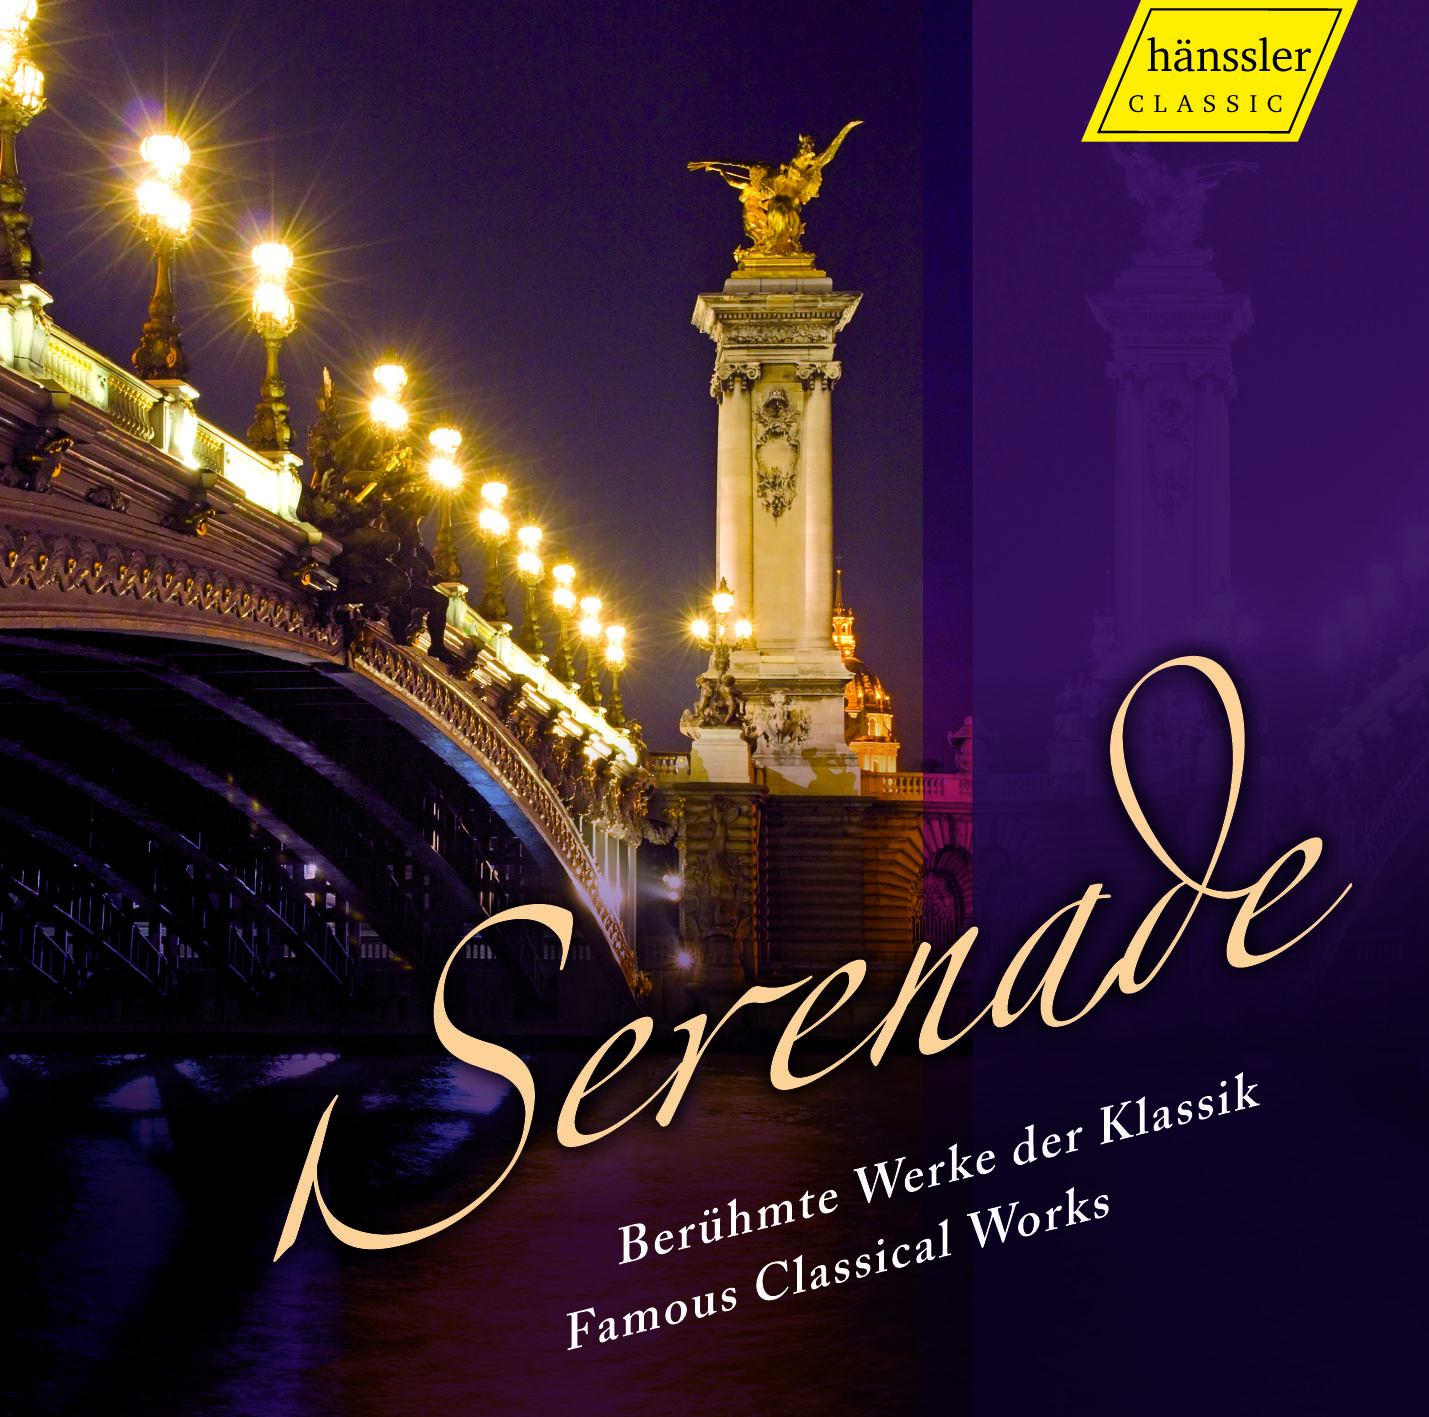 Serenade No. 13 in G Major, K. 525 "Eine kleine Nachtmusik": III. Menuetto: Allegretto - Trio - Menuetto da capo